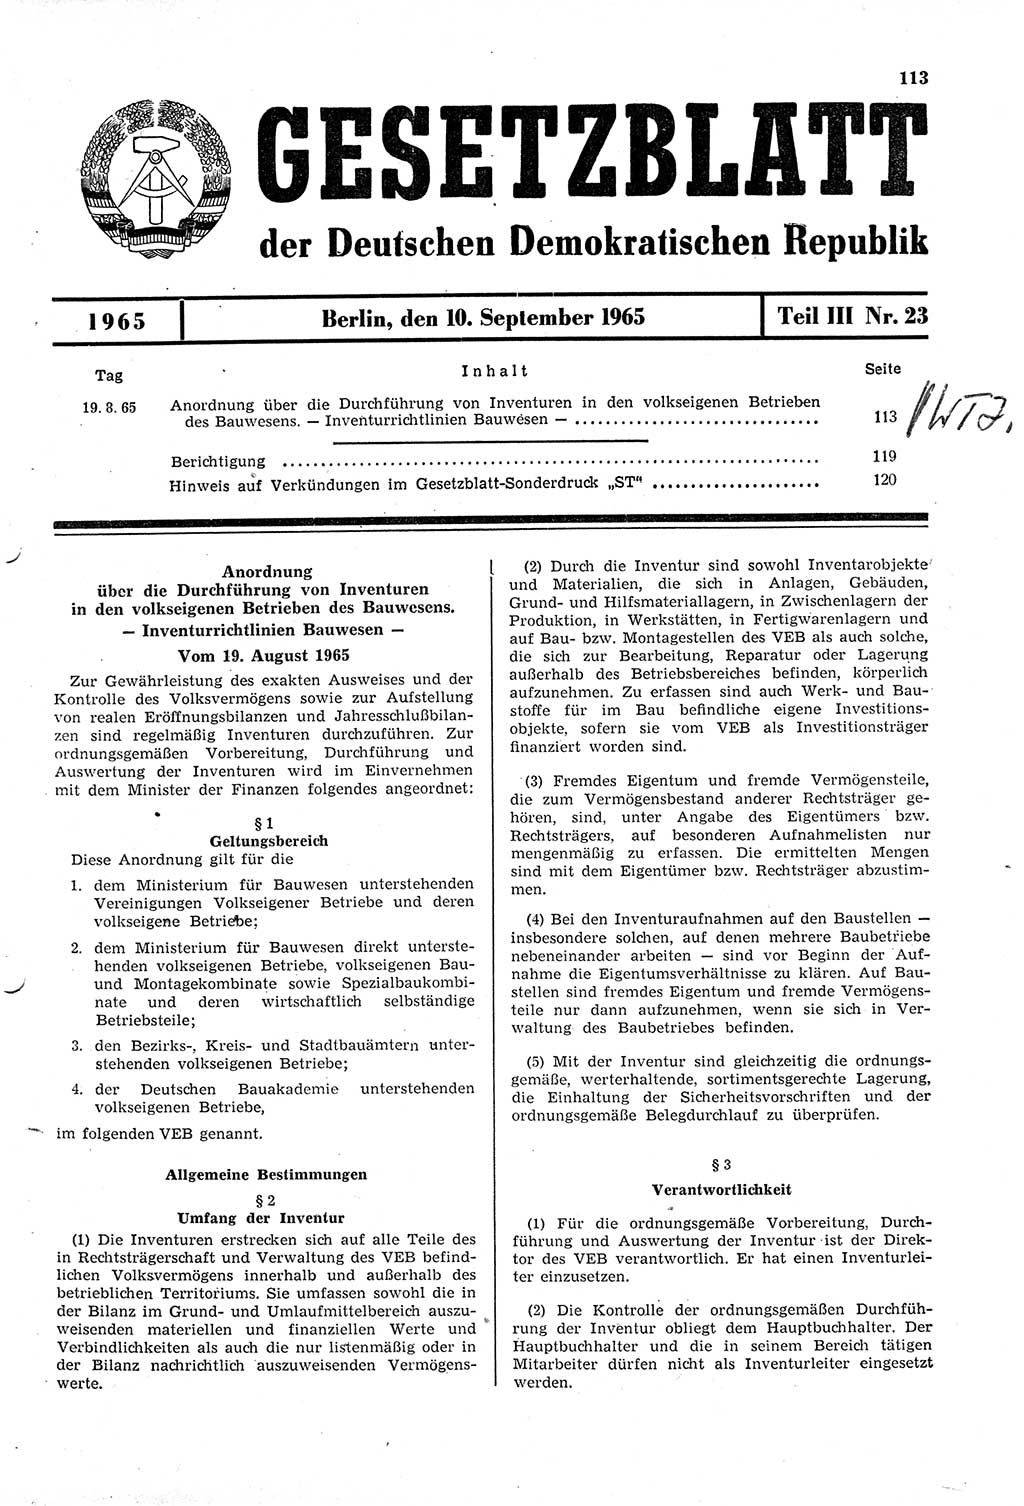 Gesetzblatt (GBl.) der Deutschen Demokratischen Republik (DDR) Teil ⅠⅠⅠ 1965, Seite 113 (GBl. DDR ⅠⅠⅠ 1965, S. 113)